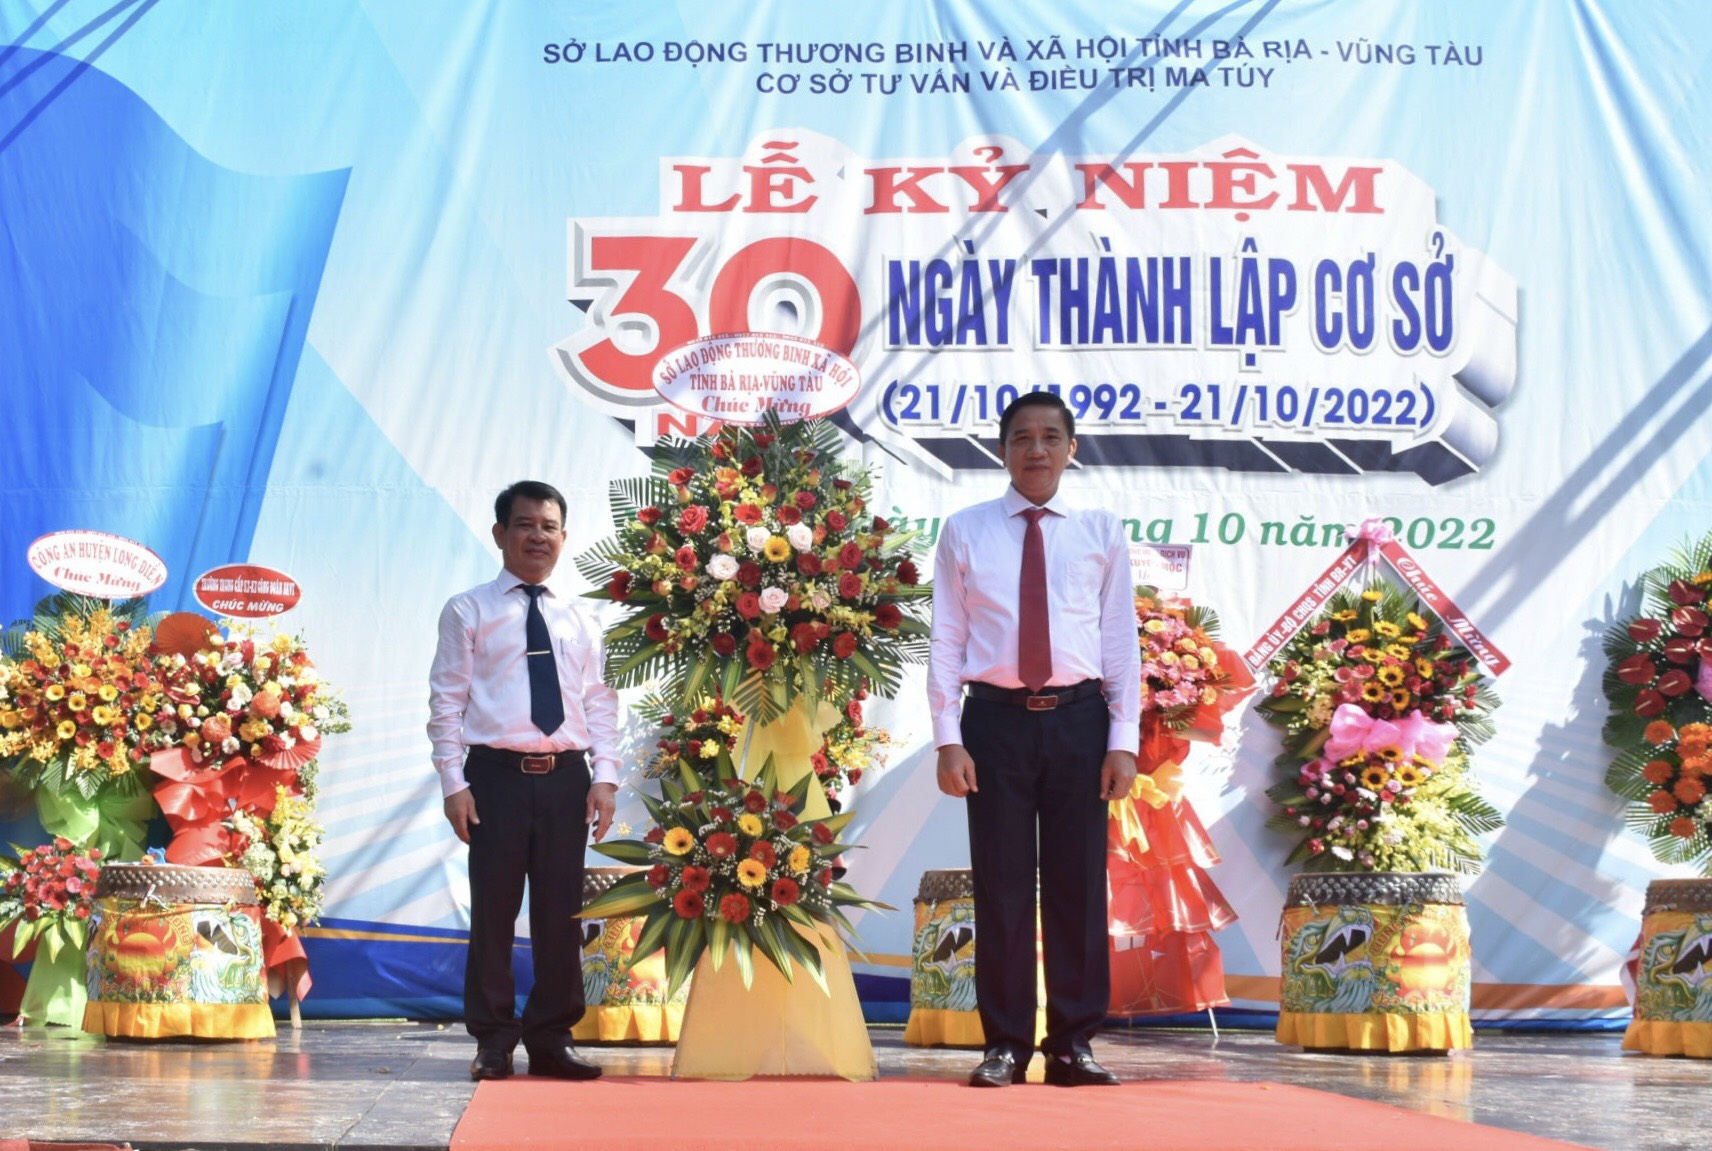 Ông Trần Quốc Khánh, Giám đốc Sở LĐTB-XH (bên phải) tặng hoa chúc mừng kỷ niệm 30 năm thành lập Cơ sở Tư vấn và Điều trị ma tuý